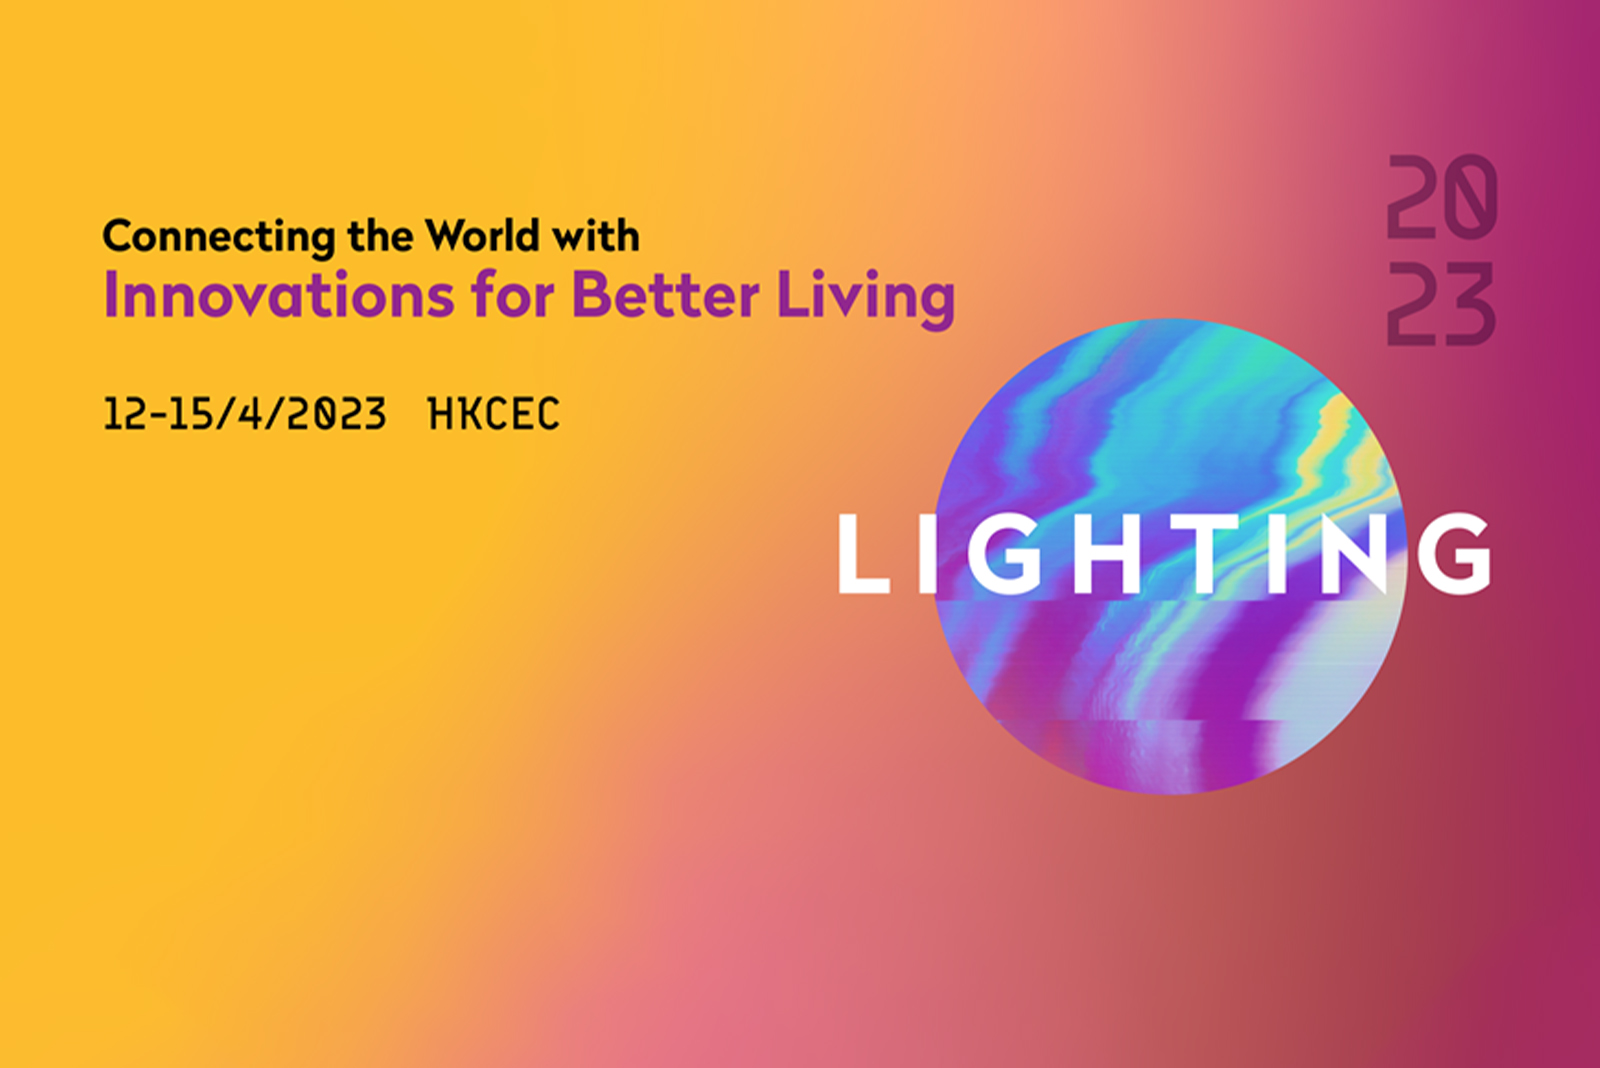 Απρίλιος 2023 |Διεθνής Έκθεση Φωτισμού του Χονγκ Κονγκ